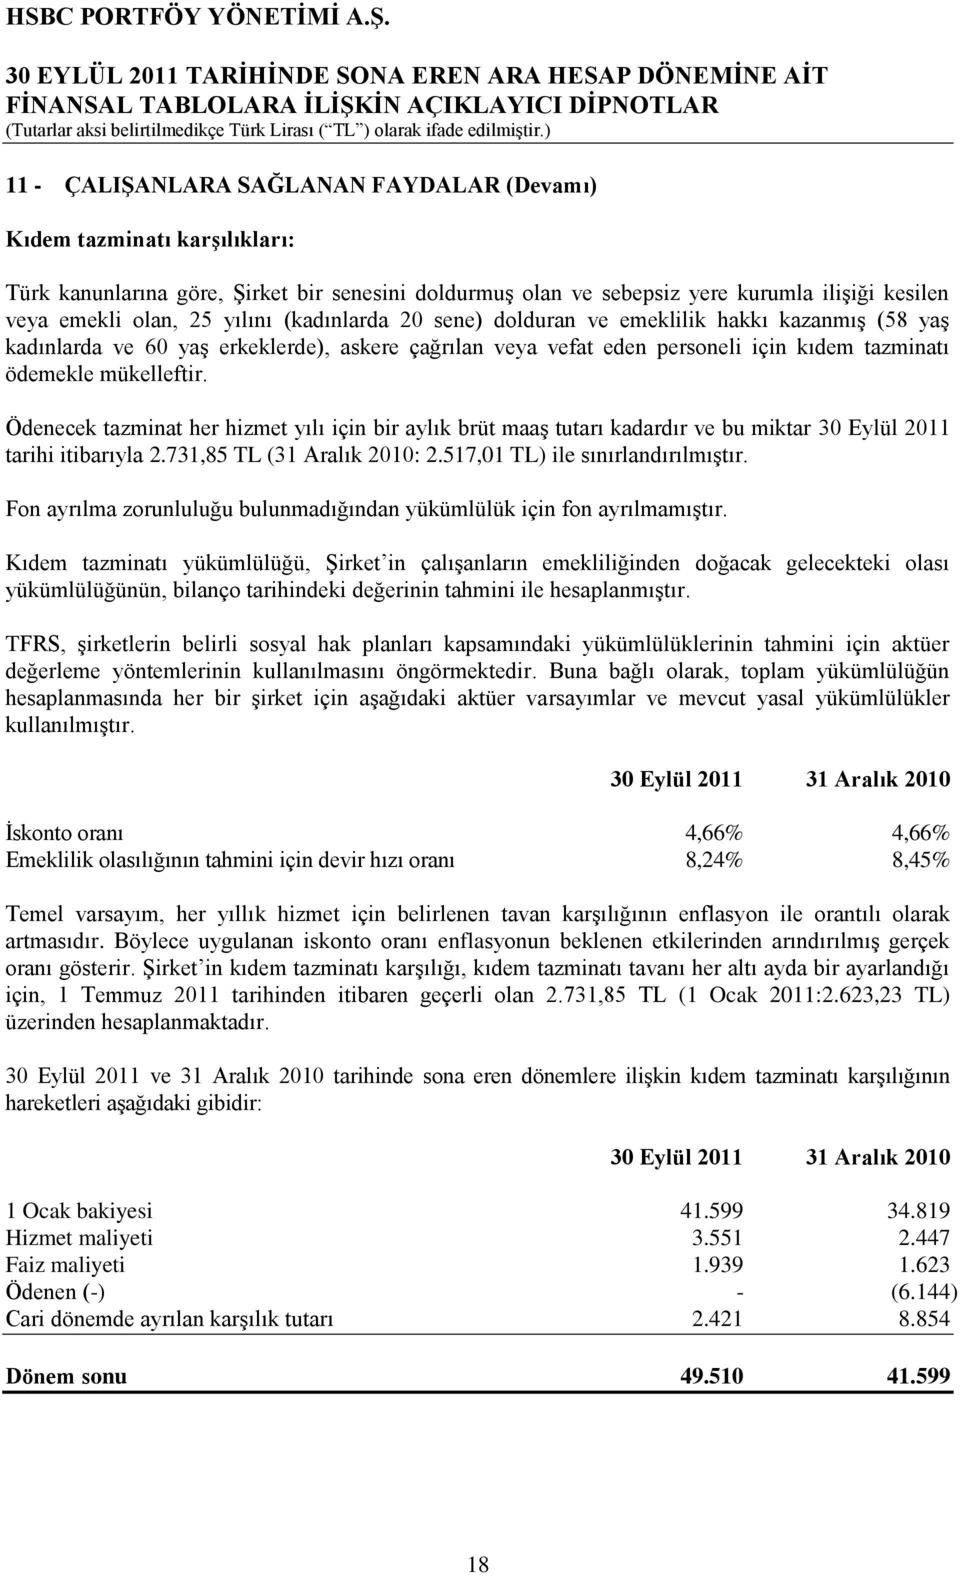 Ödenecek tazminat her hizmet yılı için bir aylık brüt maaģ tutarı kadardır ve bu miktar 30 Eylül 2011 tarihi itibarıyla 2.731,85 TL (31 Aralık 2010: 2.517,01 TL) ile sınırlandırılmıģtır.